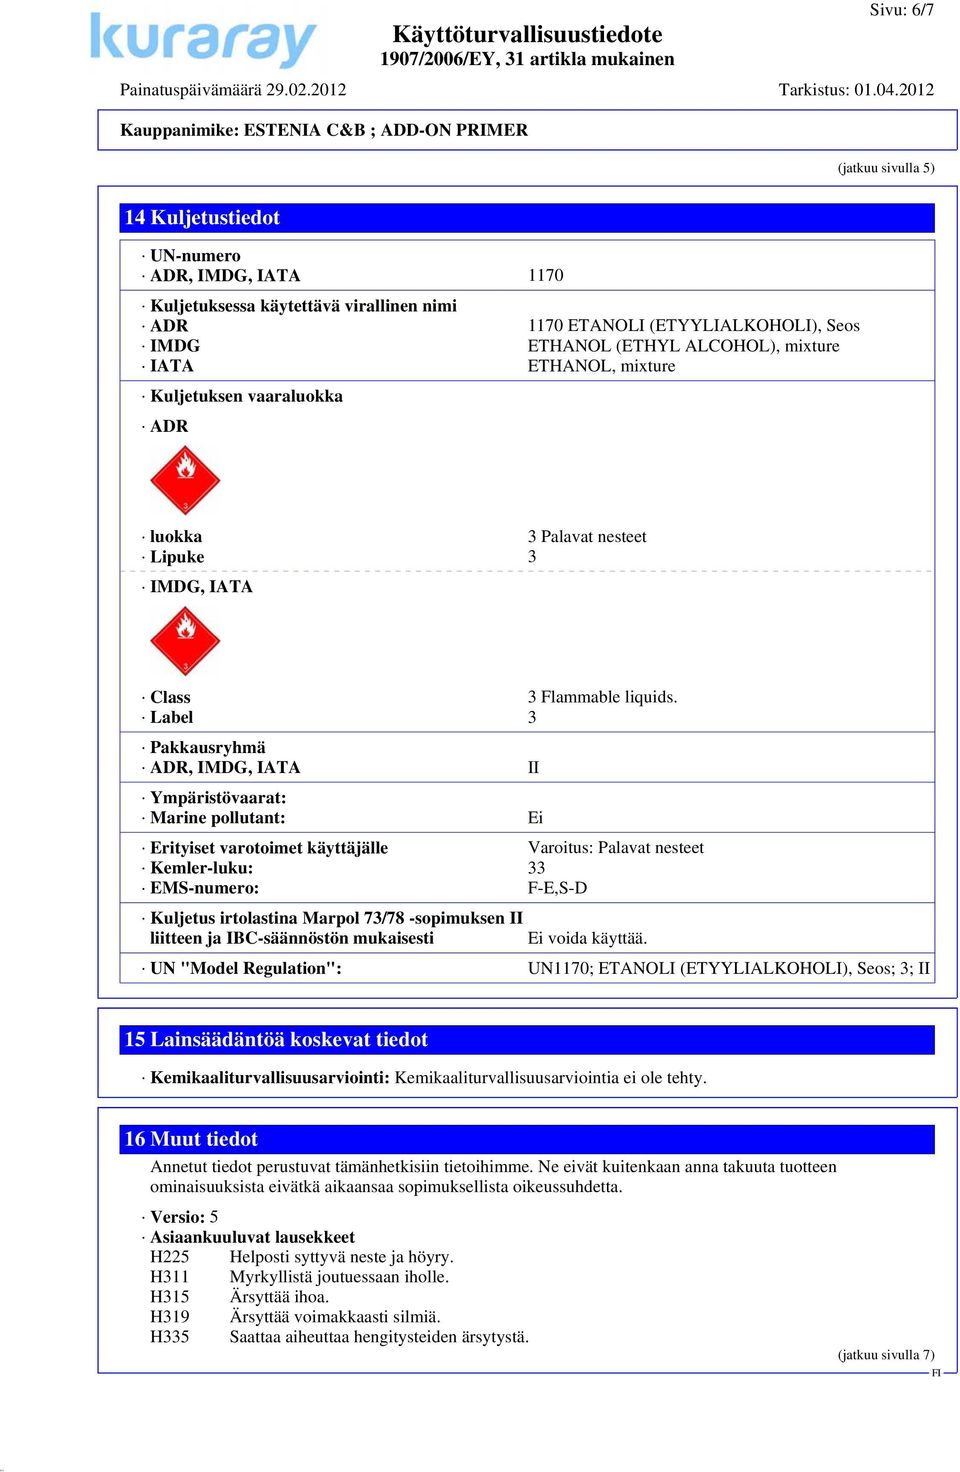 Label 3 Pakkausryhmä ADR, IMDG, IATA II Ympäristövaarat: Marine pollutant: Ei Erityiset varotoimet käyttäjälle Varoitus: Palavat nesteet Kemler-luku: 33 EMS-numero: F-E,S-D Kuljetus irtolastina